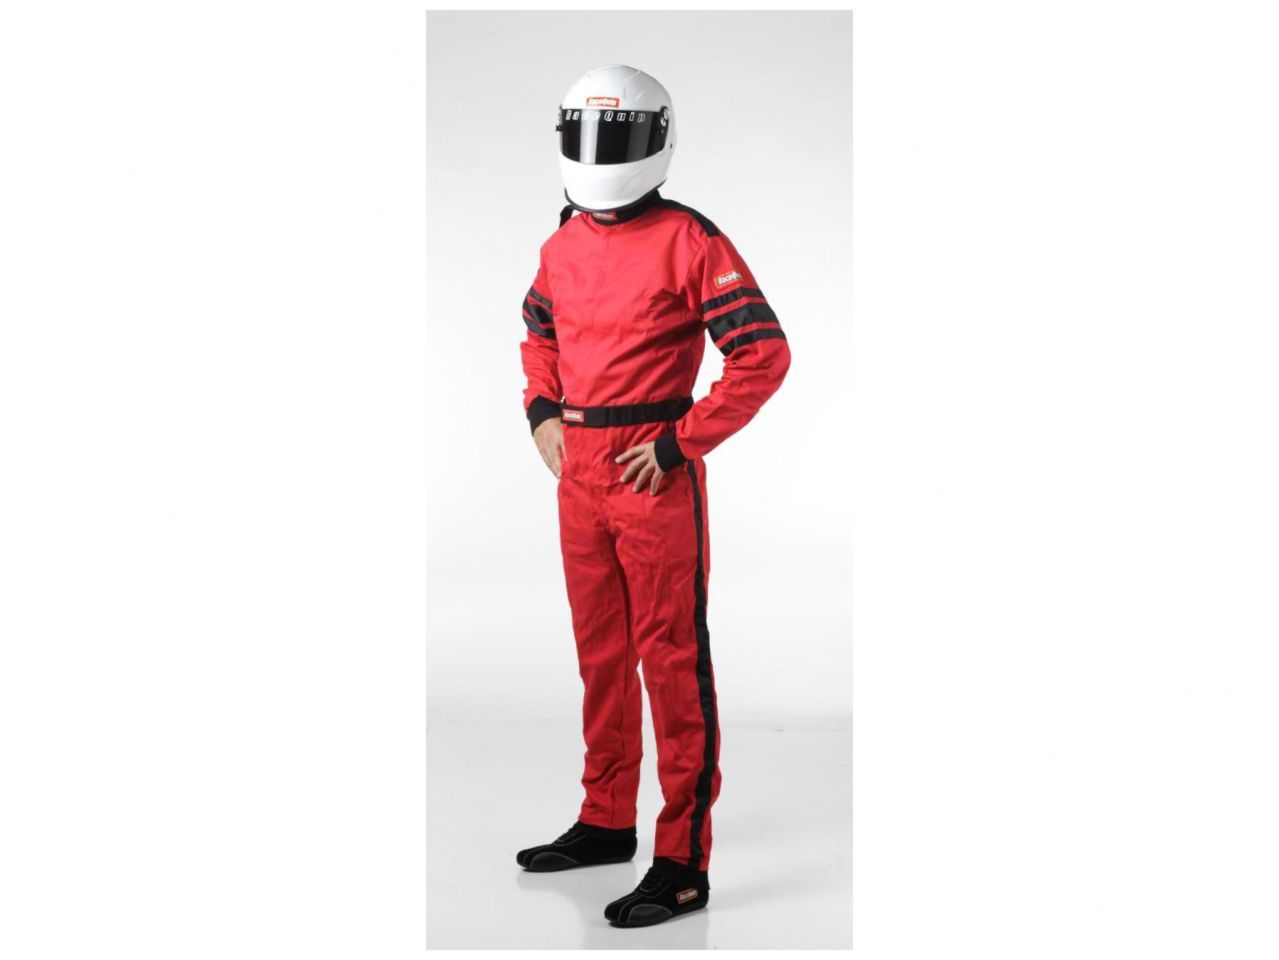 Racequip Suits 110018 Item Image